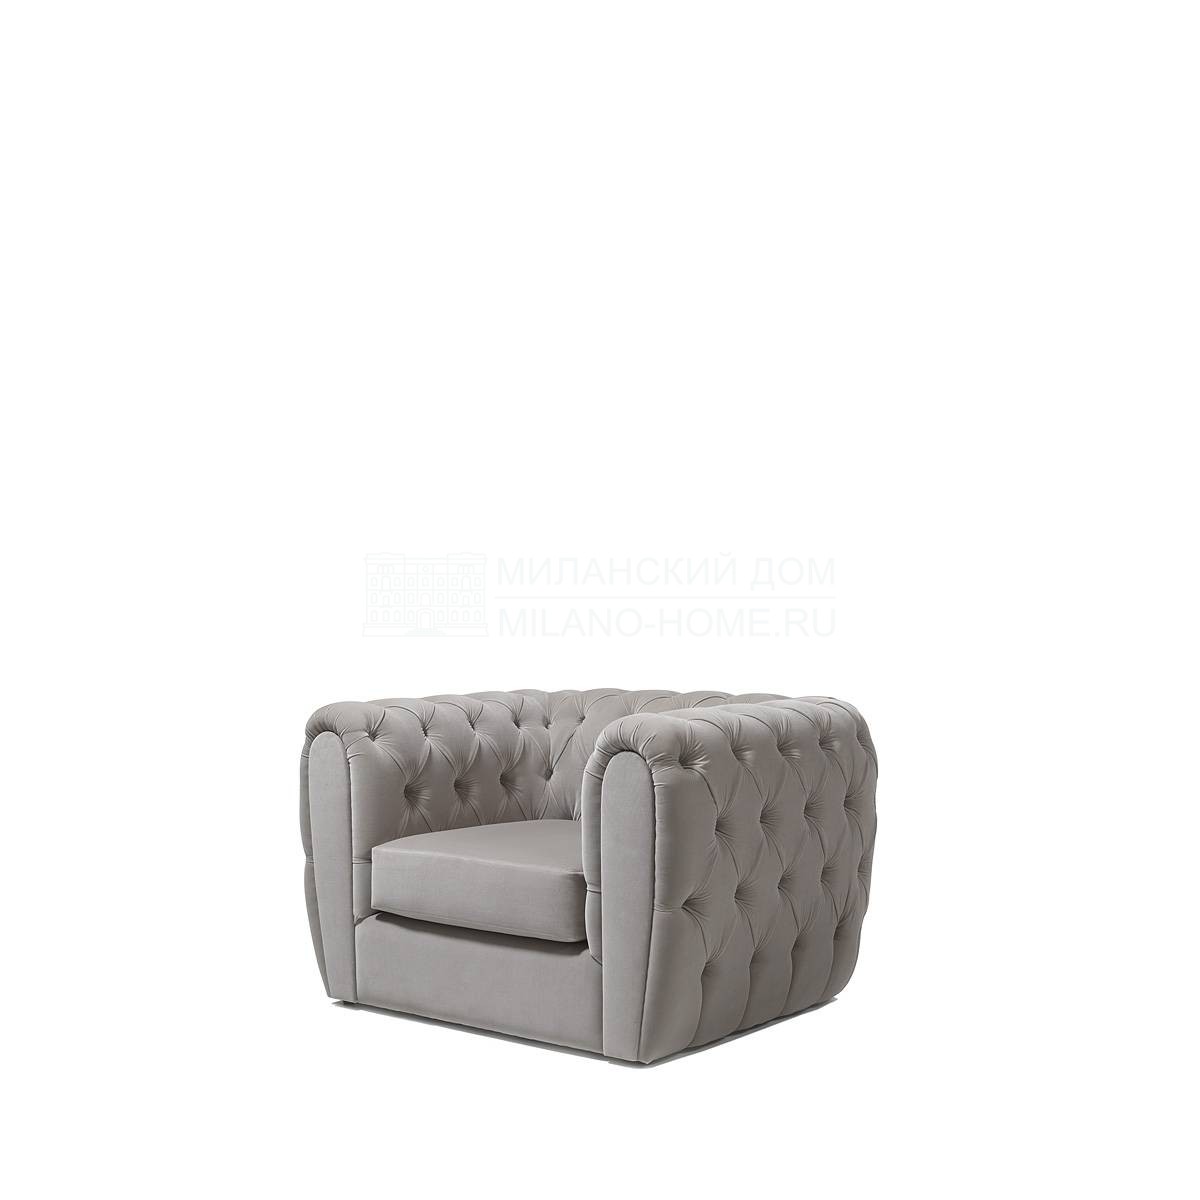 Кресло Nimes armchair из Испании фабрики COLECCION ALEXANDRA